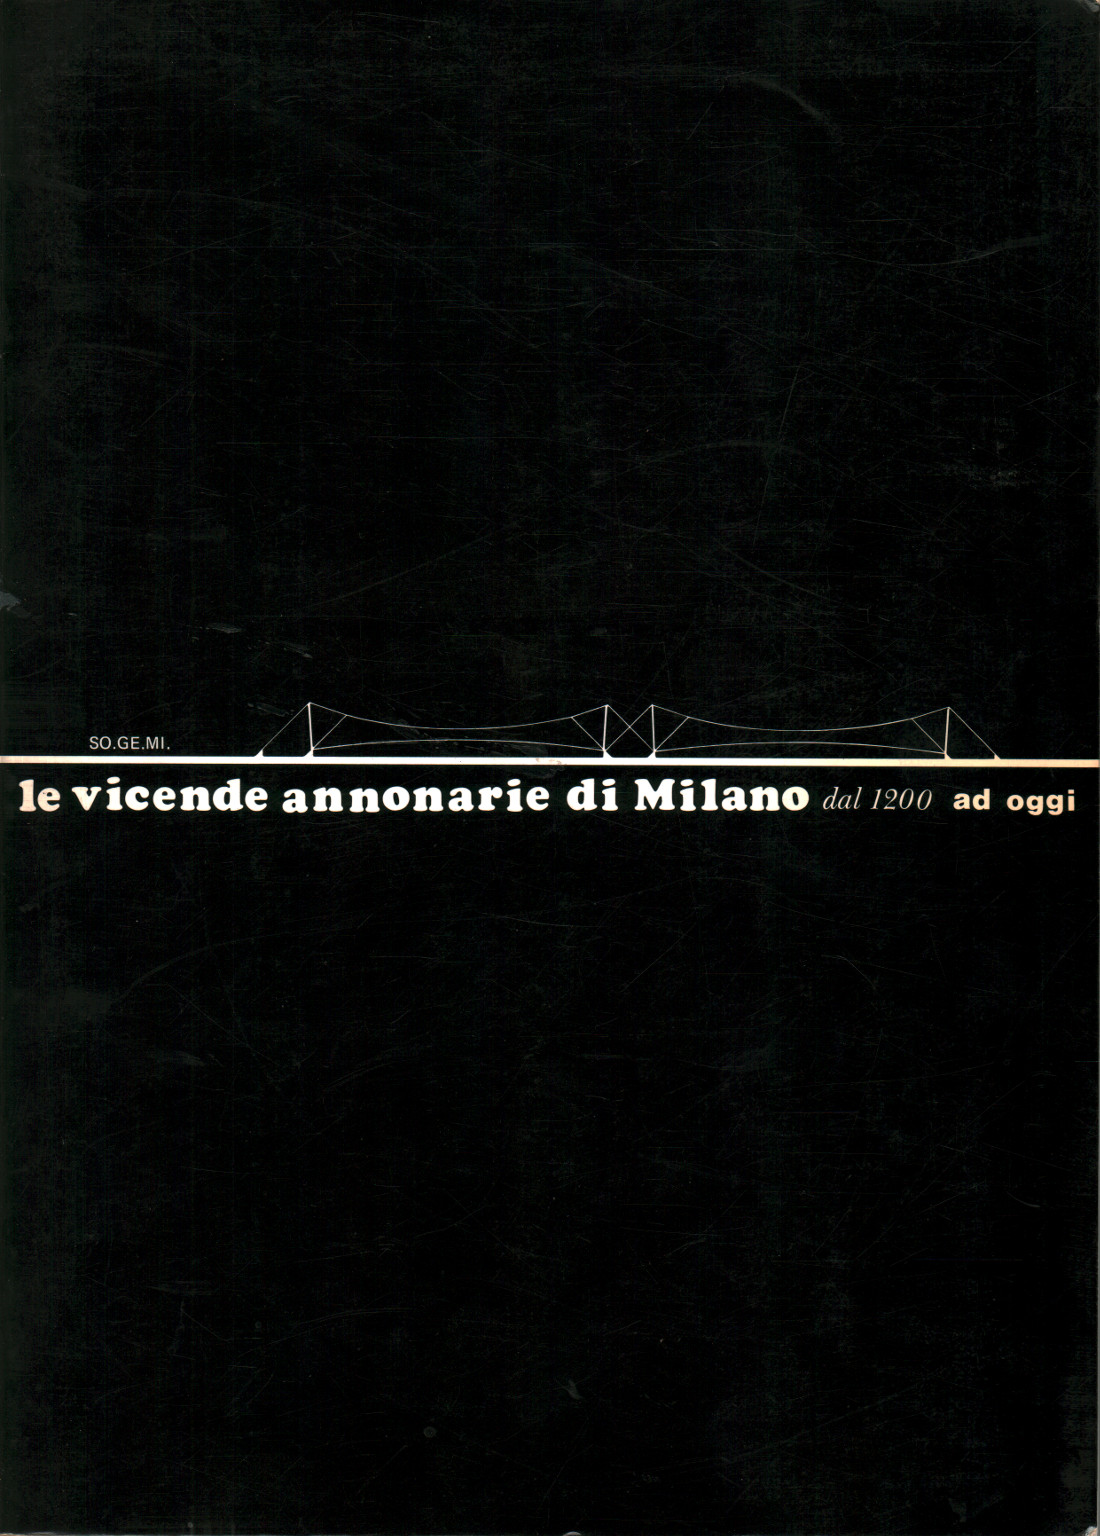 Los acontecimientos comentados de Milán desde 1200 hasta hoy, s.a.